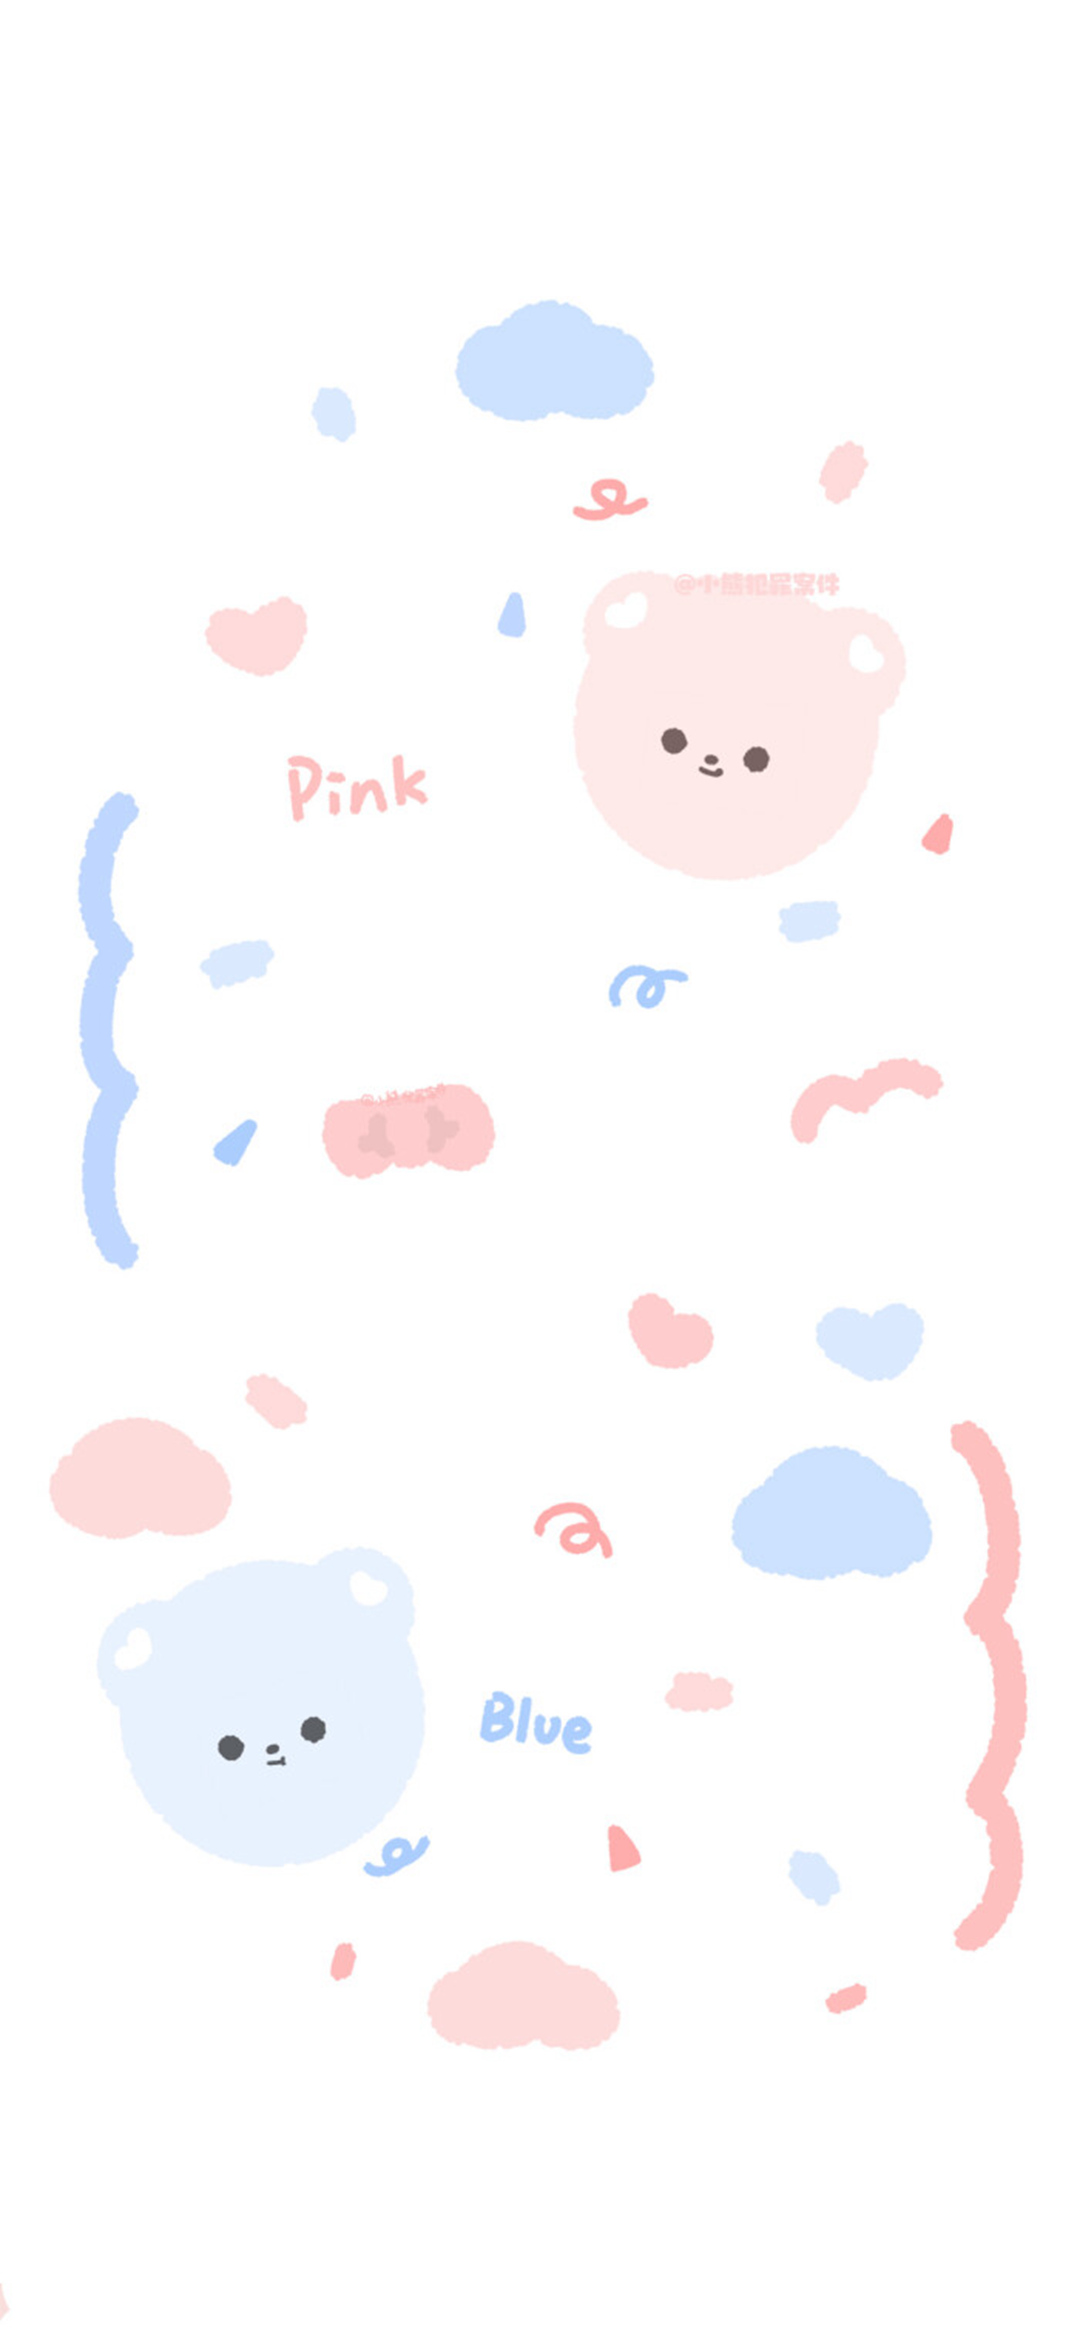 粉粉的飘带小熊可爱满满的少女心女生手机壁纸